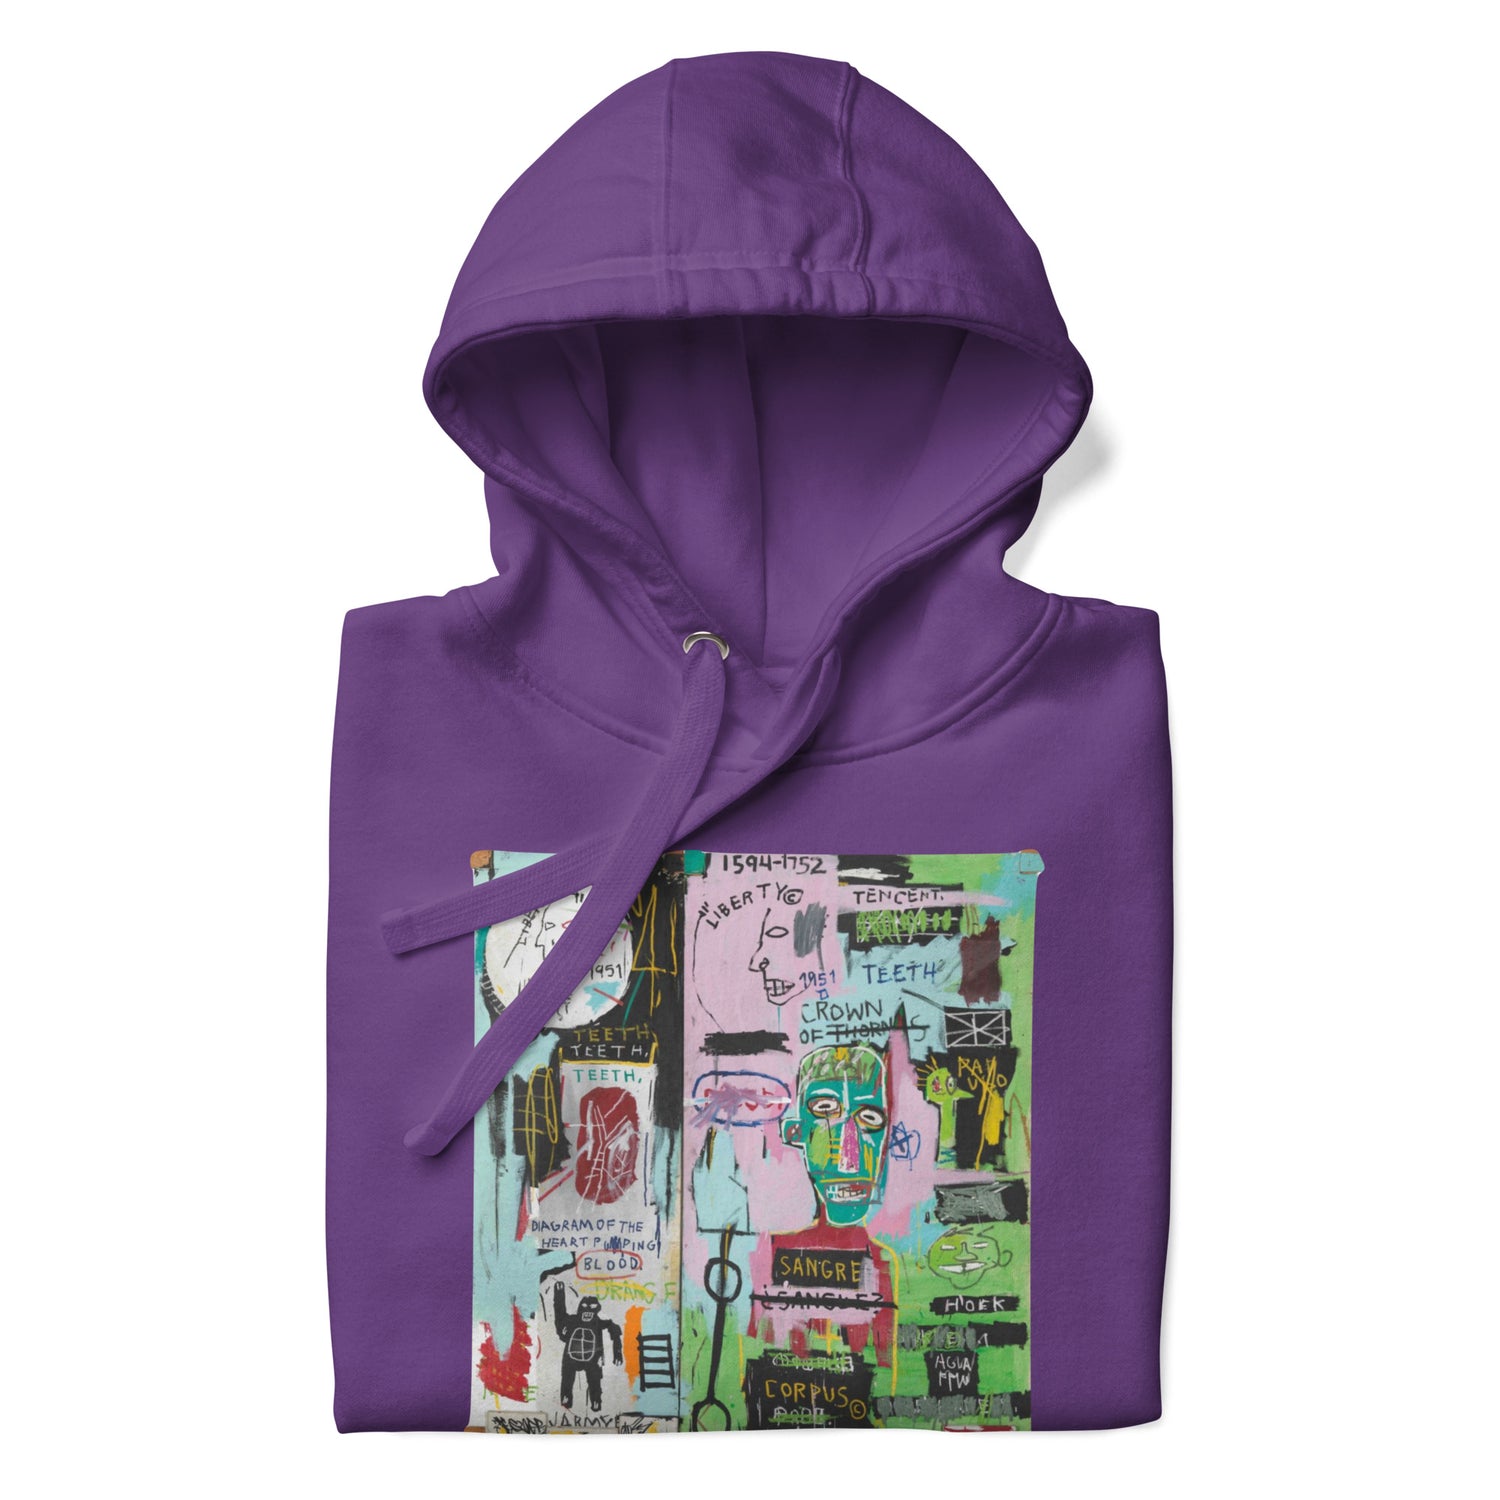 Jean-Michel Basquiat "In Italian" Artwork Printed Premium Streetwear Sweatshirt Hoodie Purple